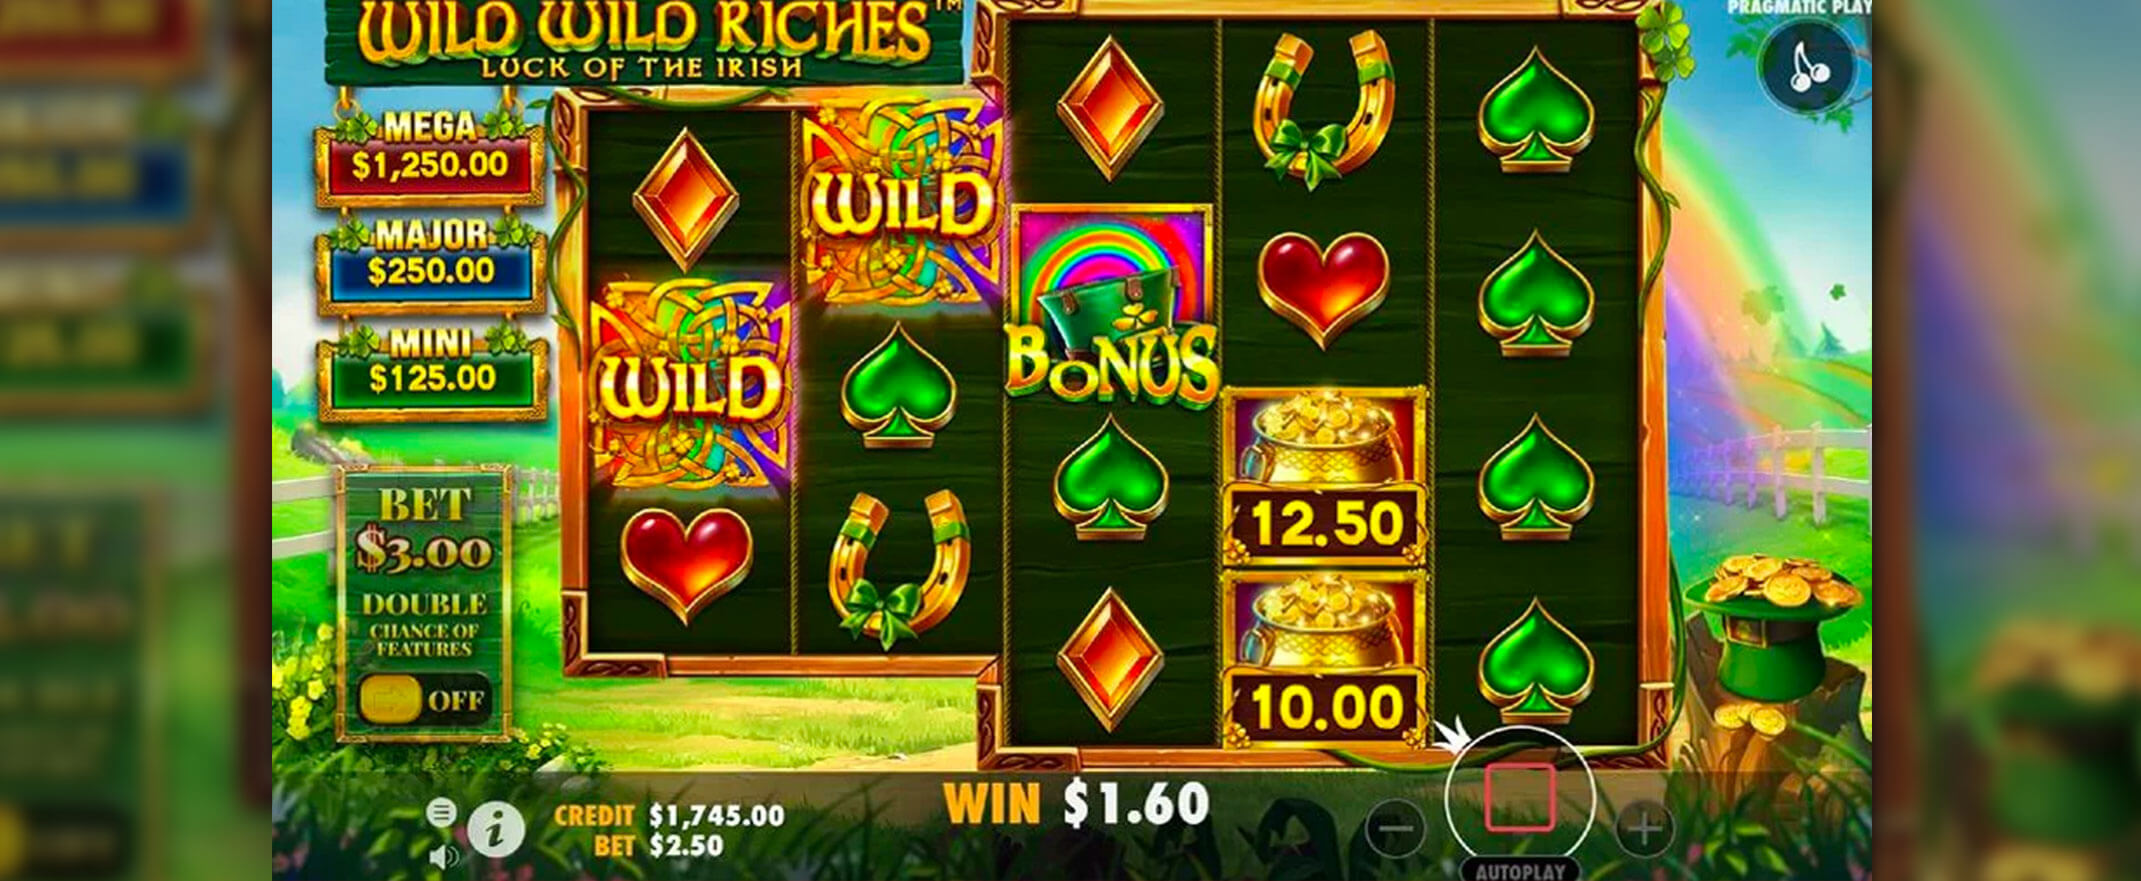 Wild Wild Riches slot screenshot